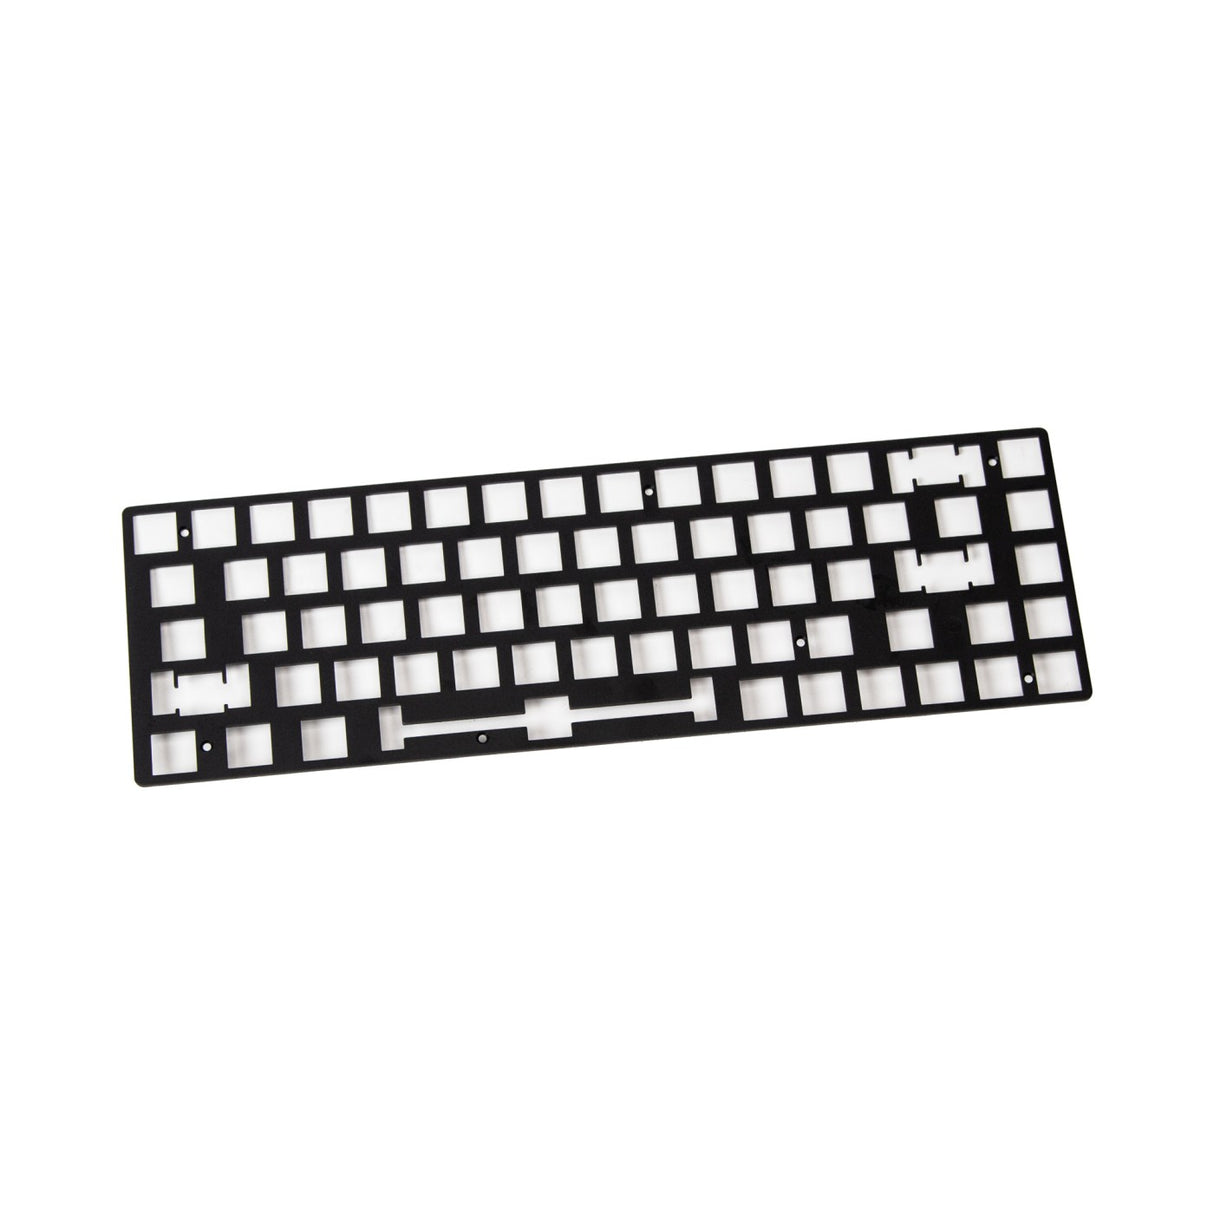 Keychron K6 Pro Keyboard Aluminum Plate ANSI Layout